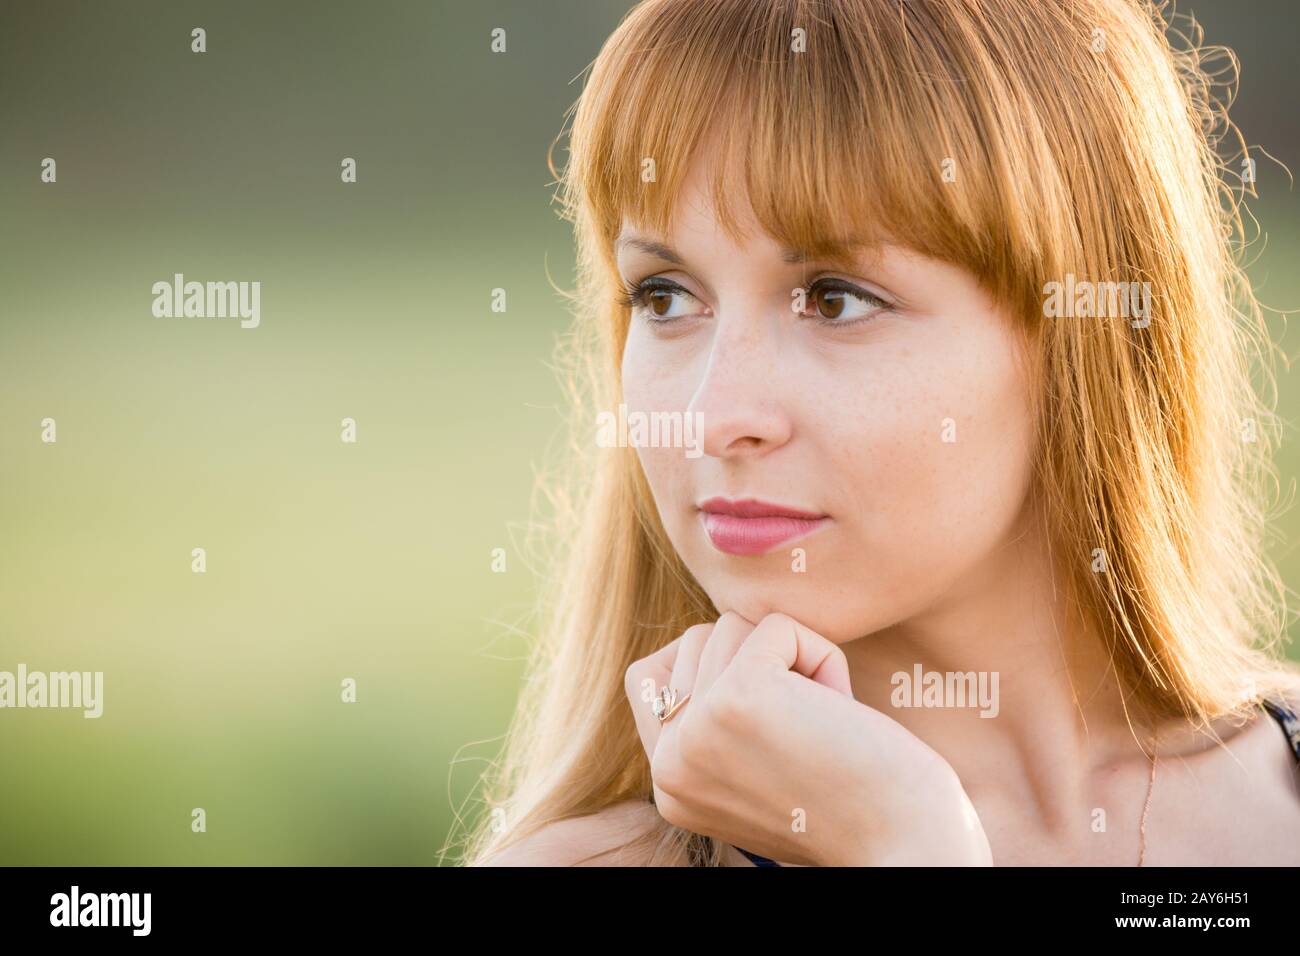 Su ritratto di una ragazza guardando a sinistra, creando un morbido sfondo verde Foto Stock